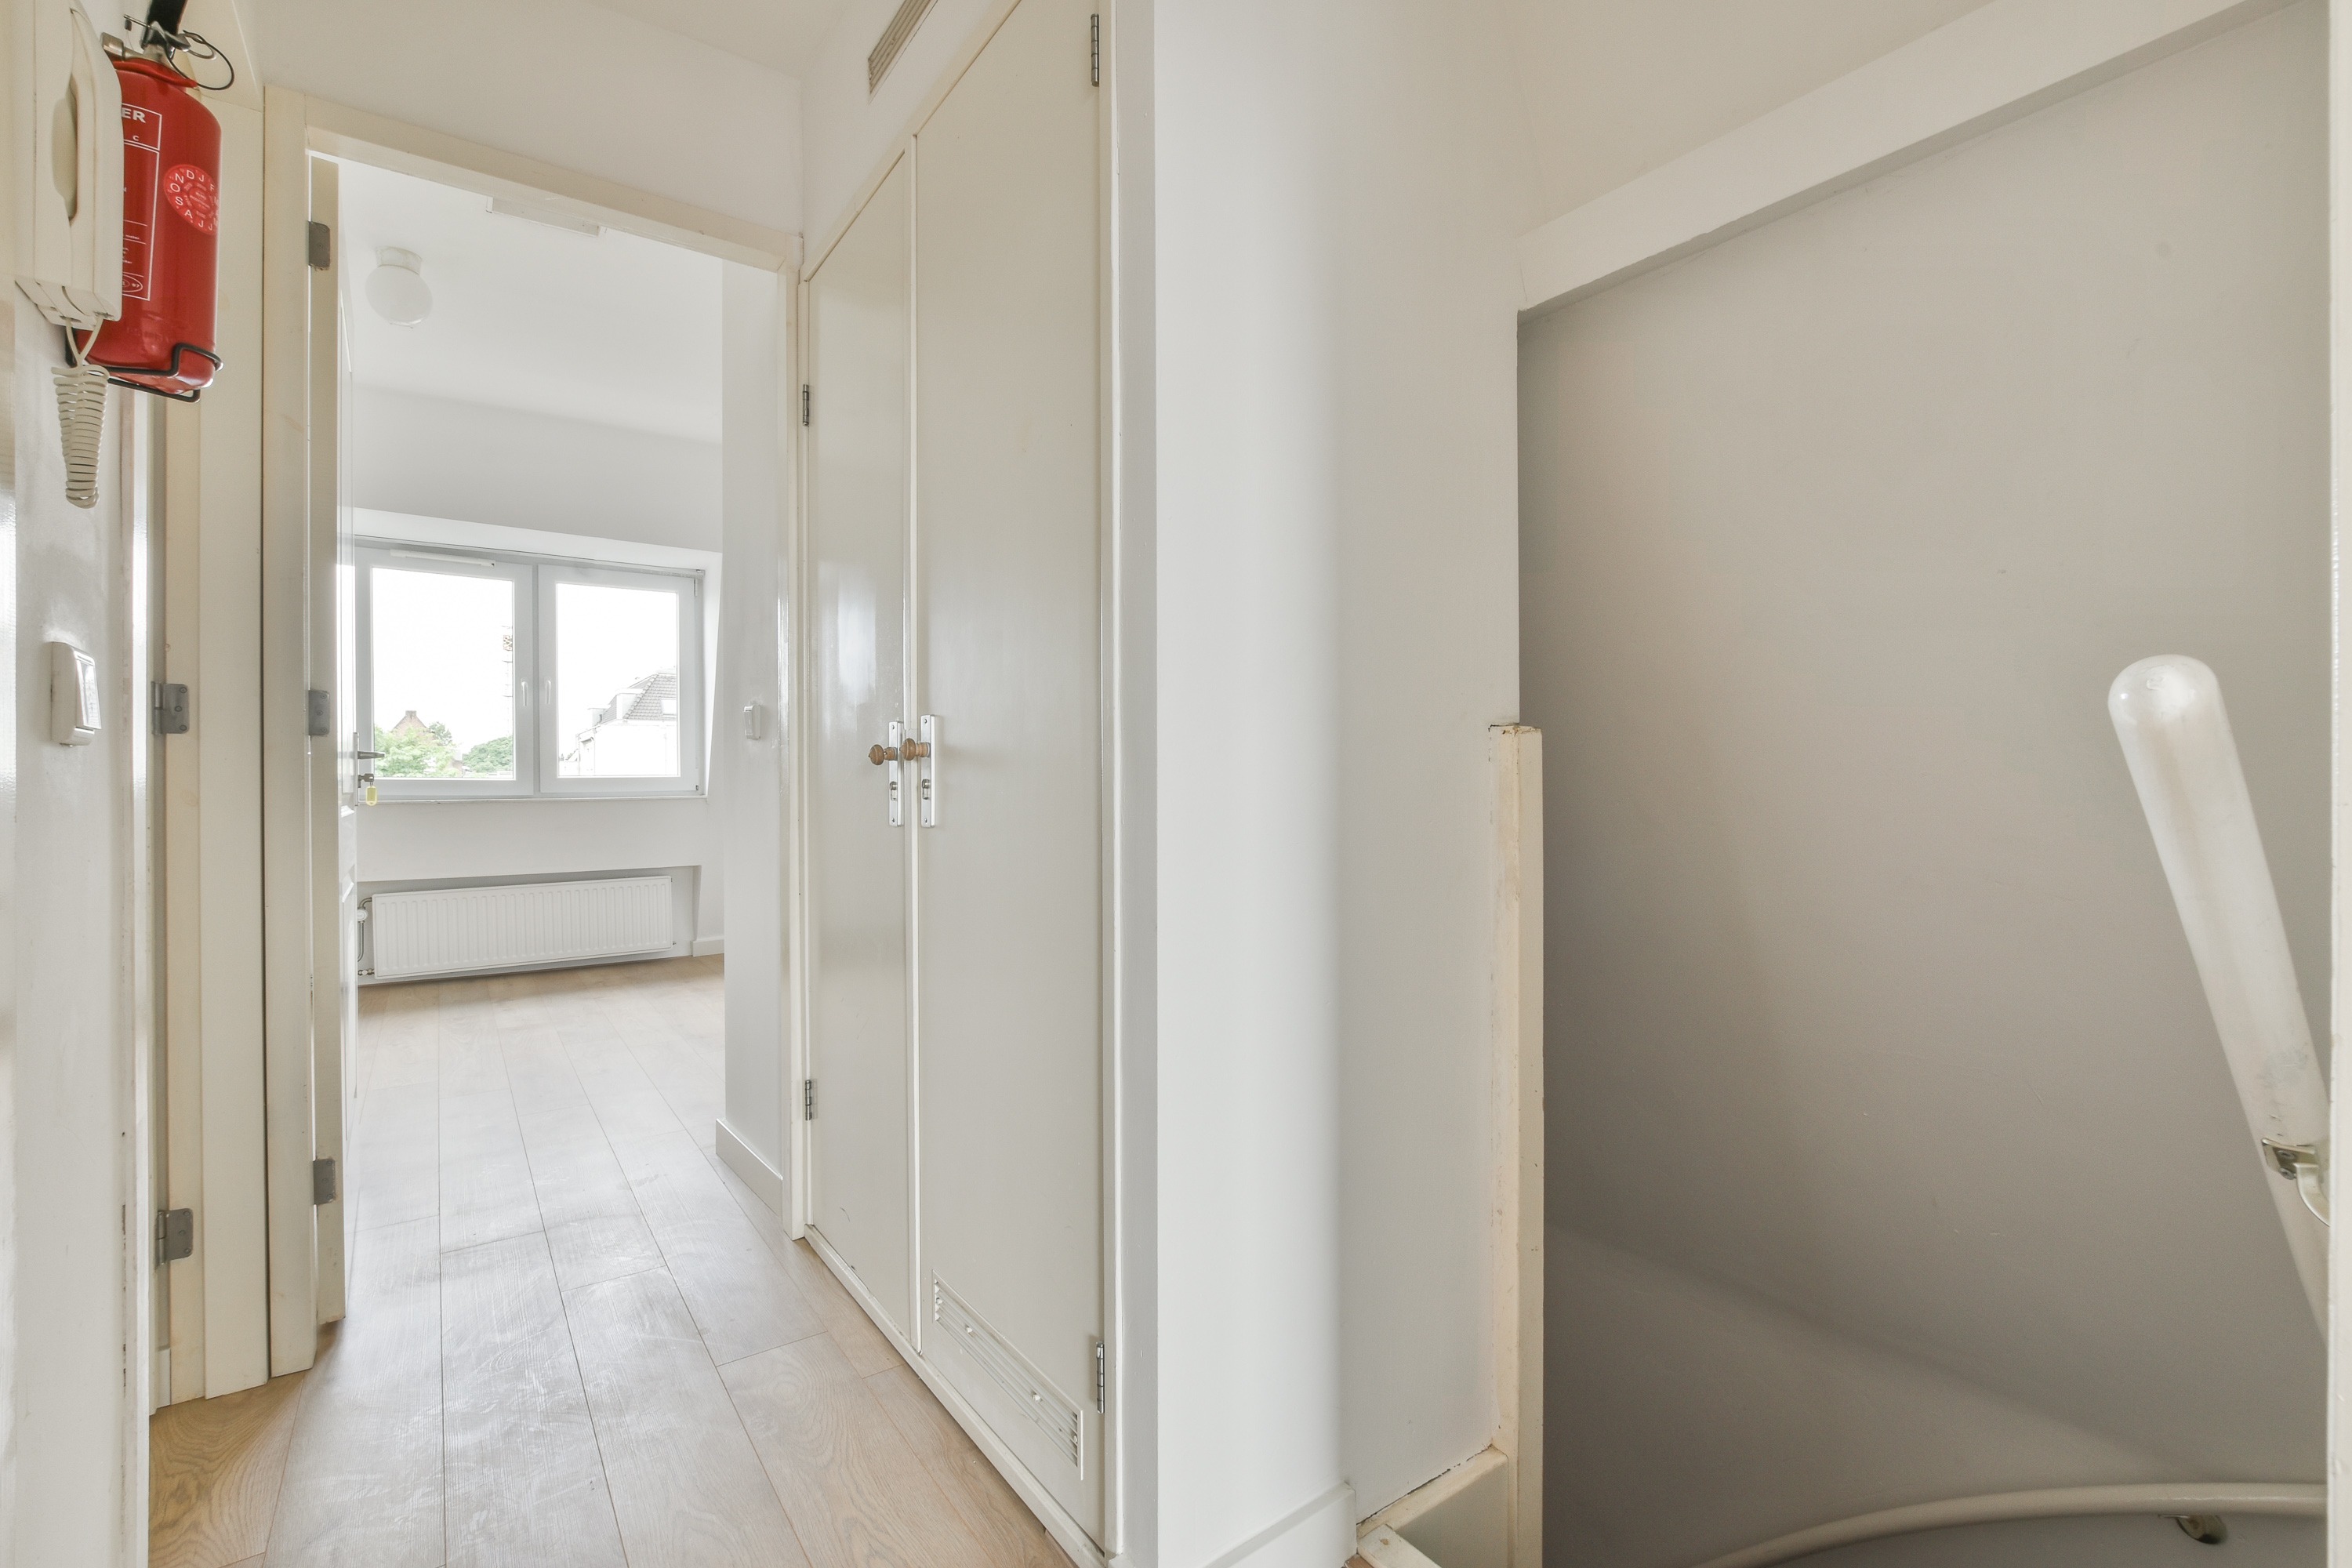 Woning / appartement - Amsterdam - Linnaeusstraat 22 1-2-3